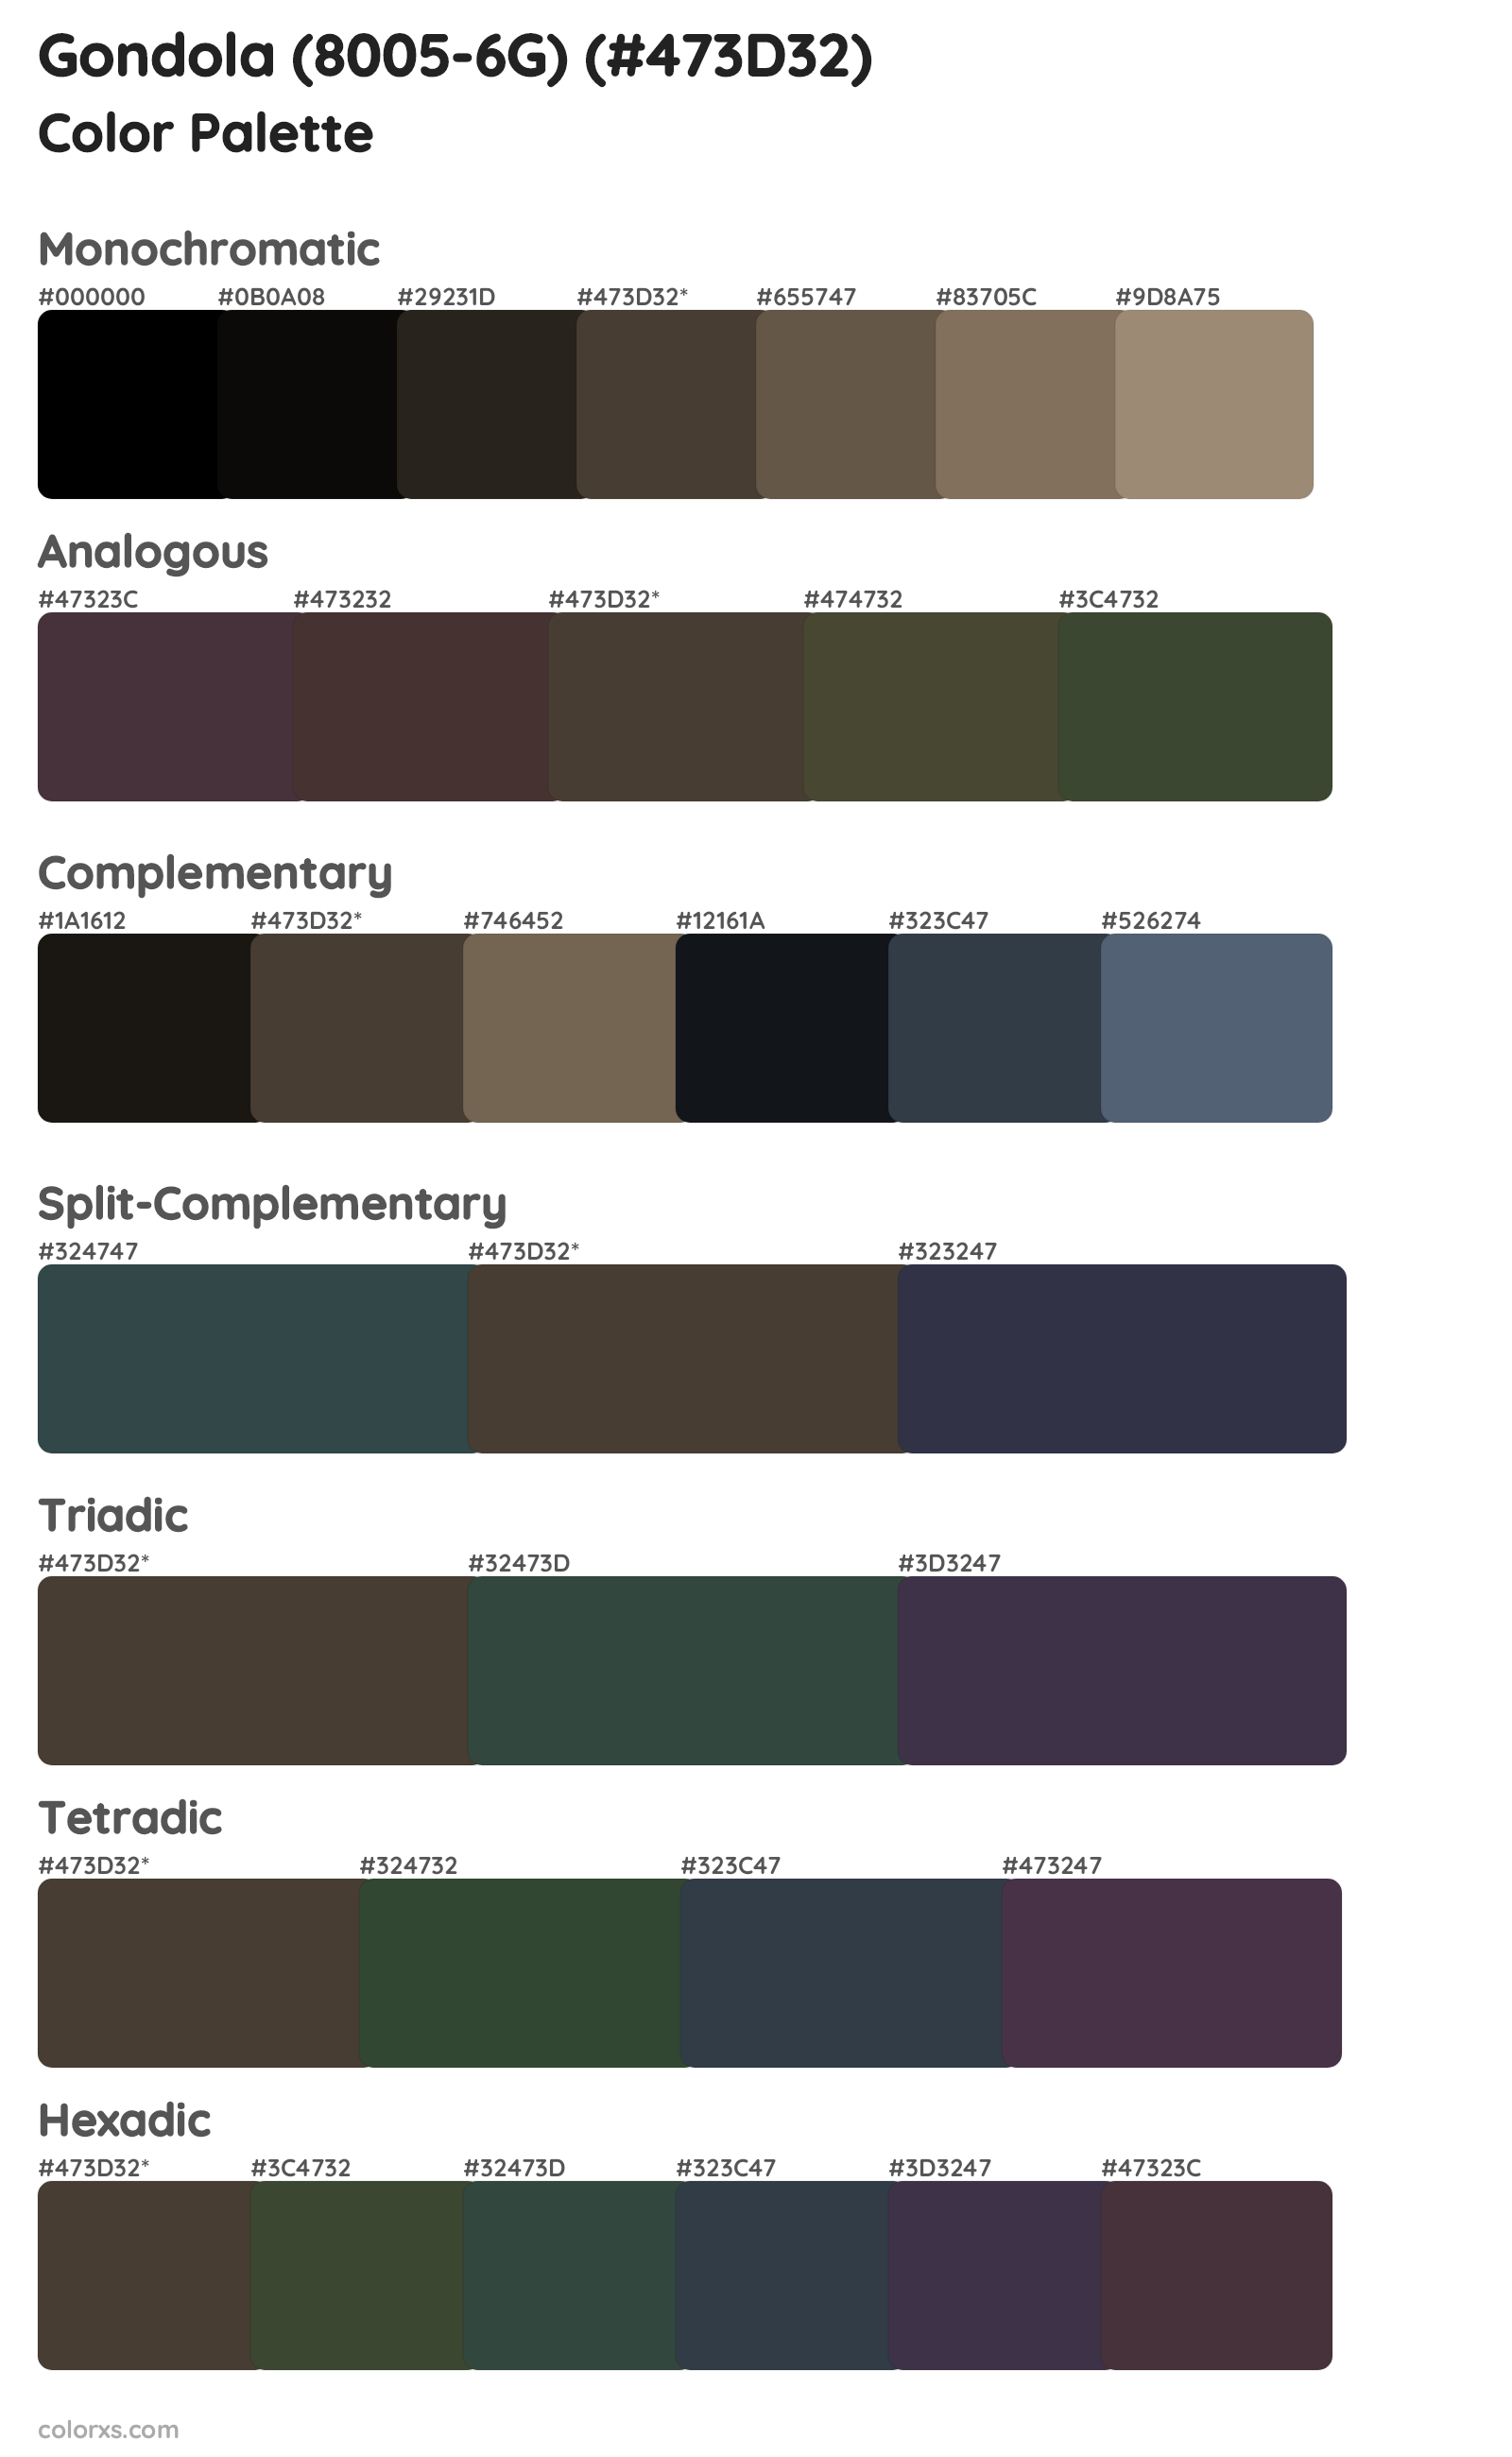 Gondola (8005-6G) Color Scheme Palettes